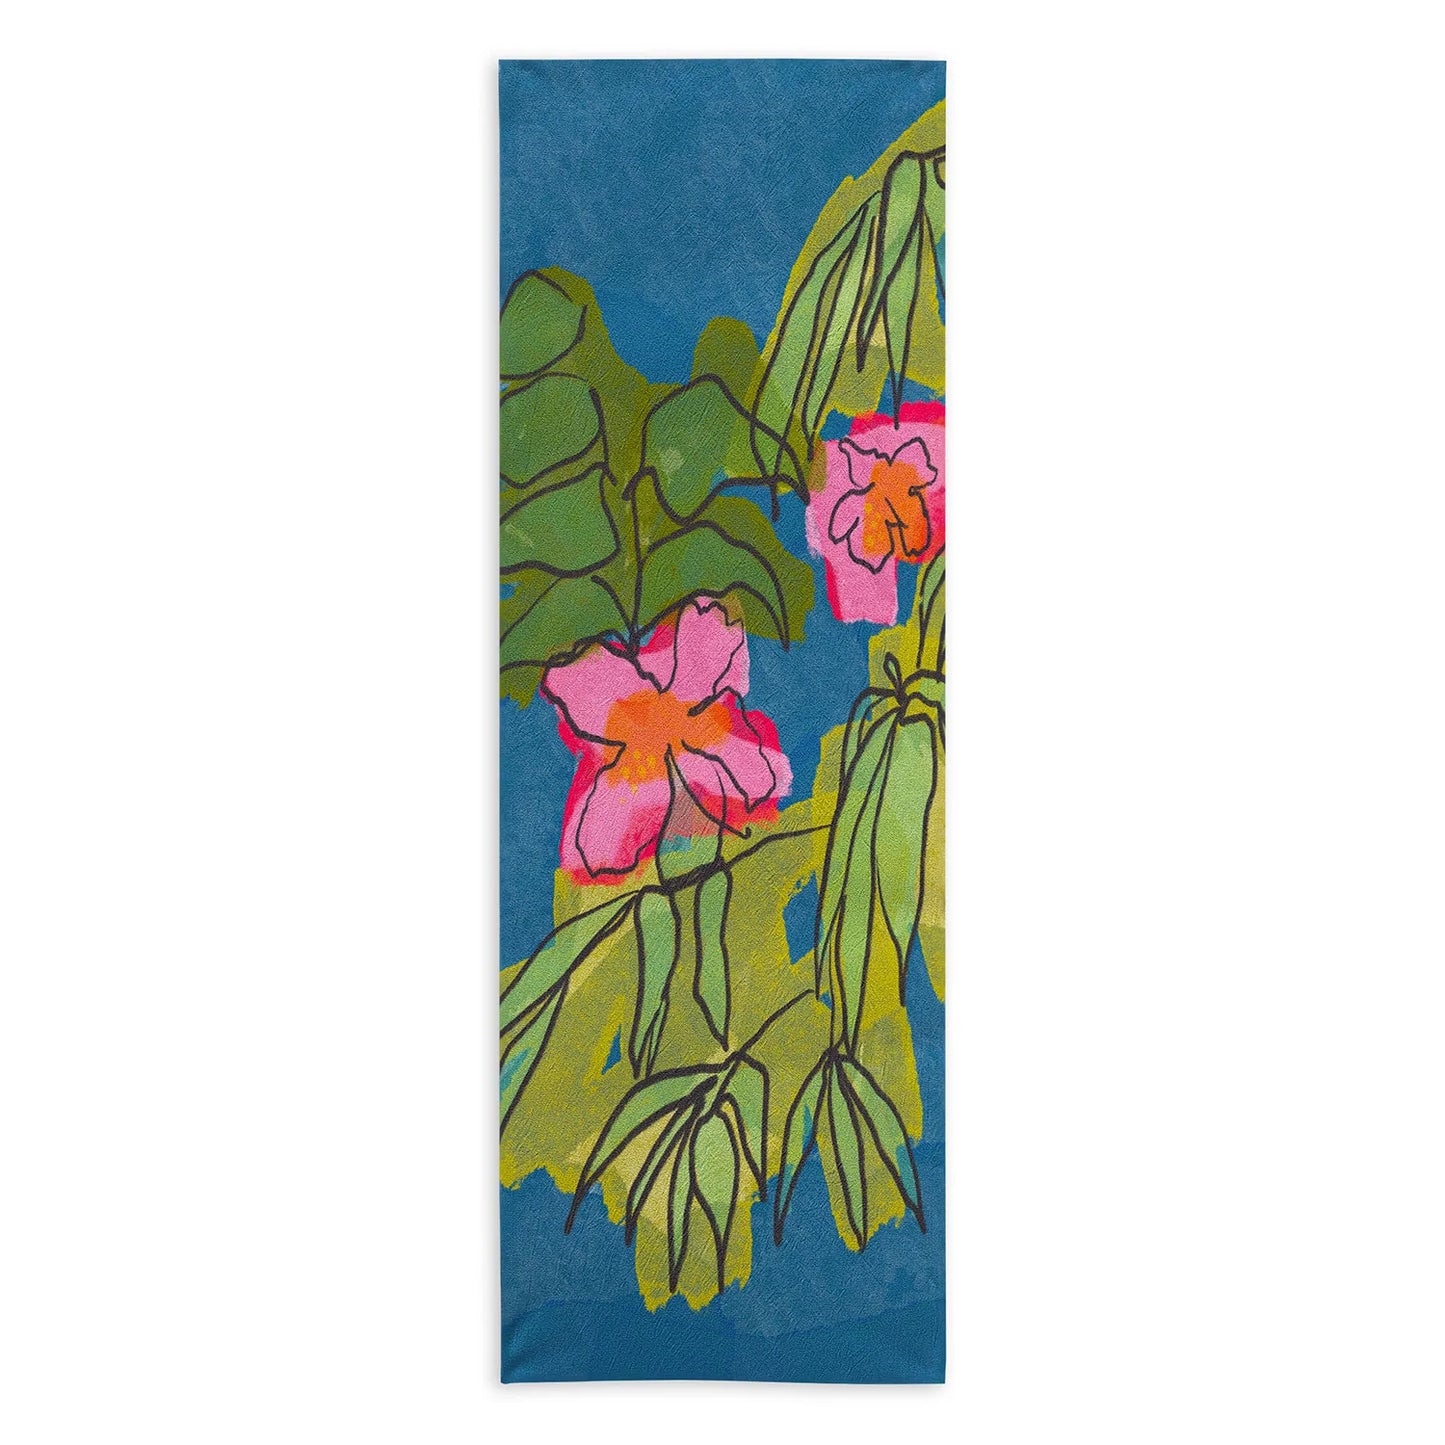 Flowers on Captiva Yoga Towel